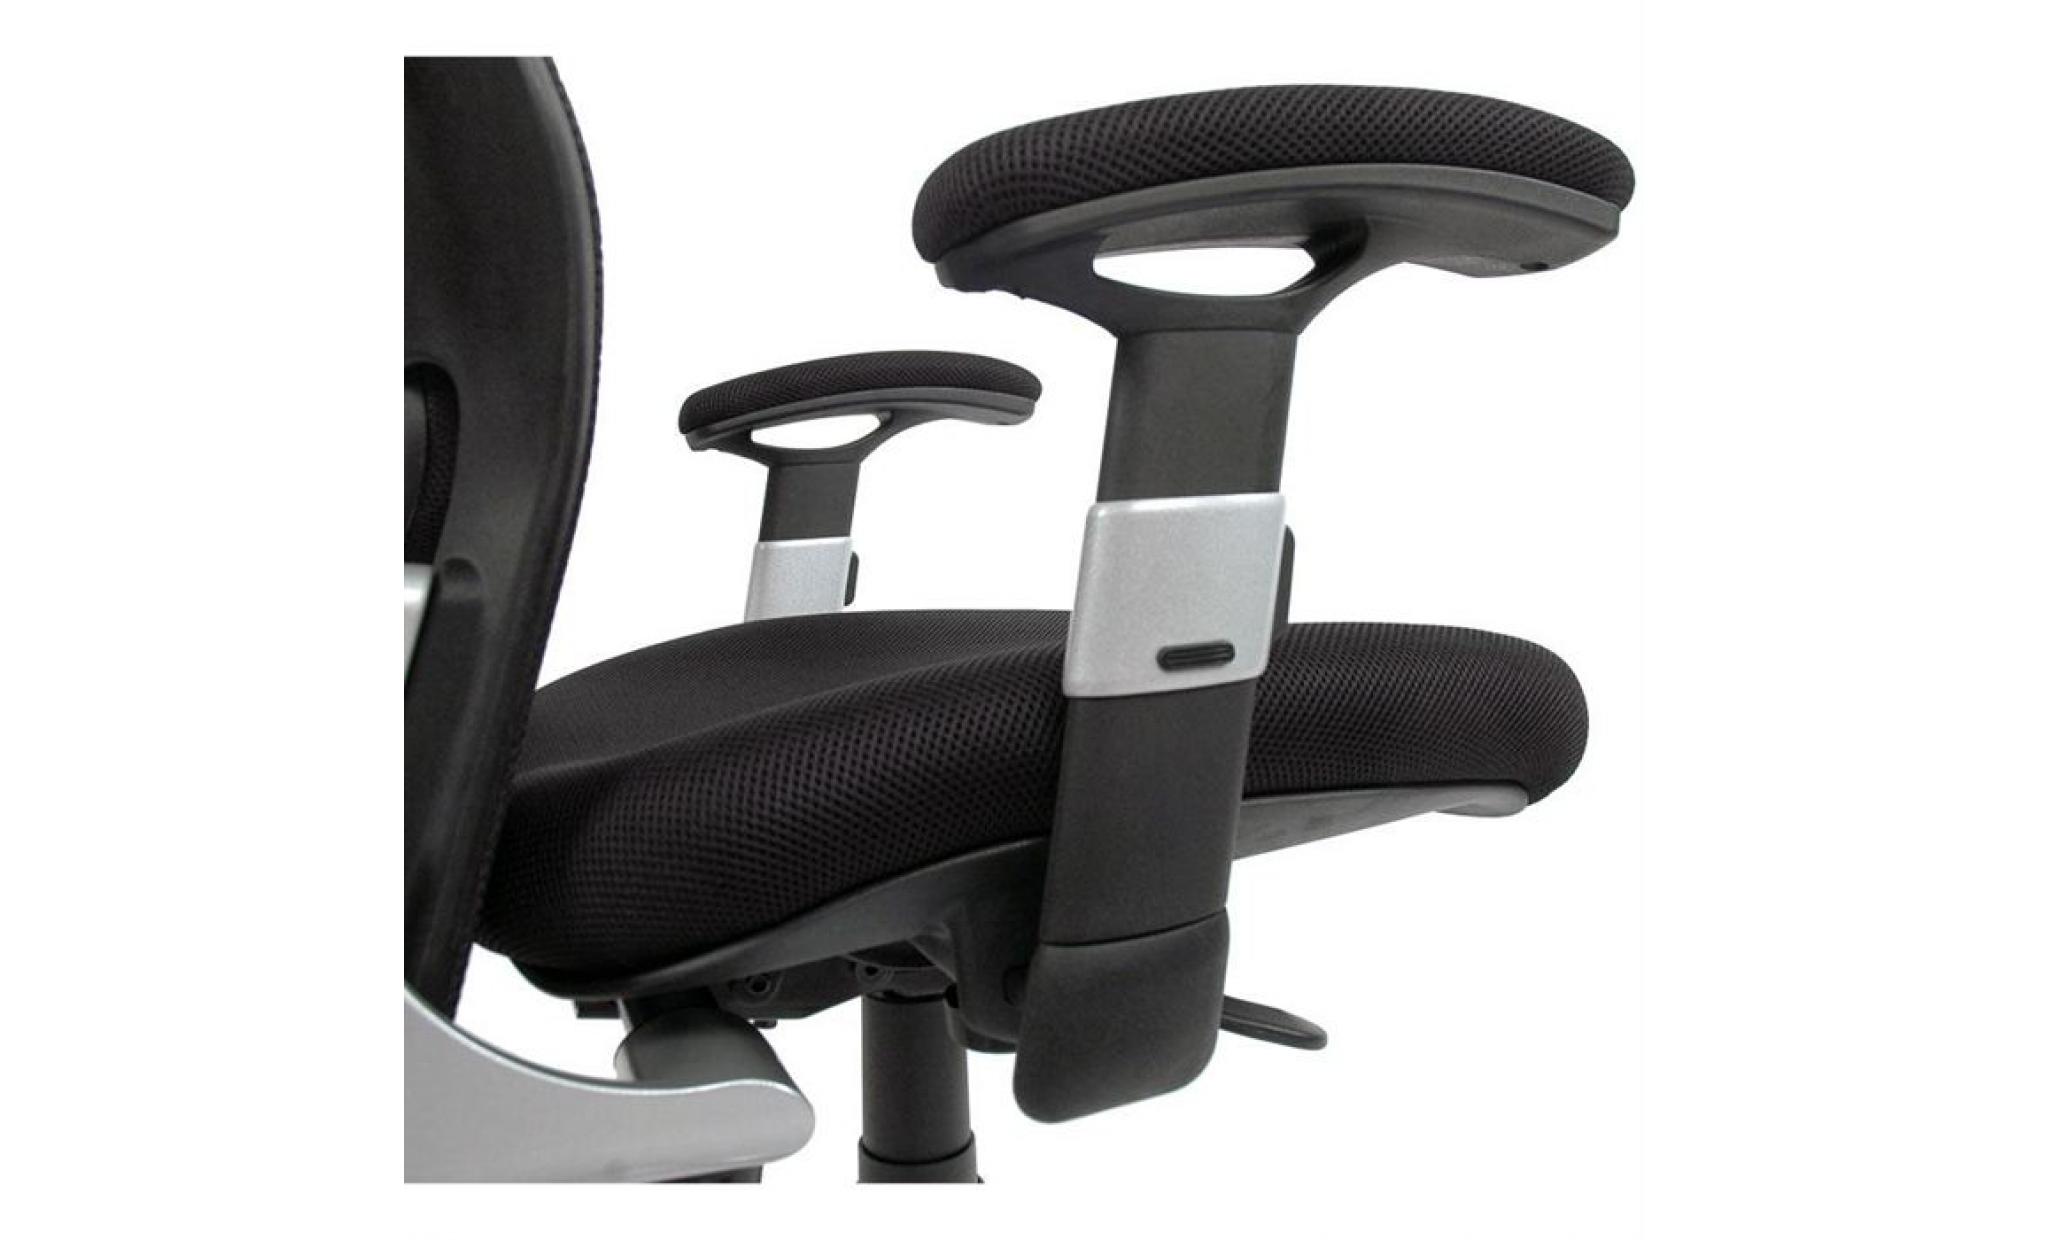 fauteuil de bureau ergonomique ultimate v2 plus pas cher